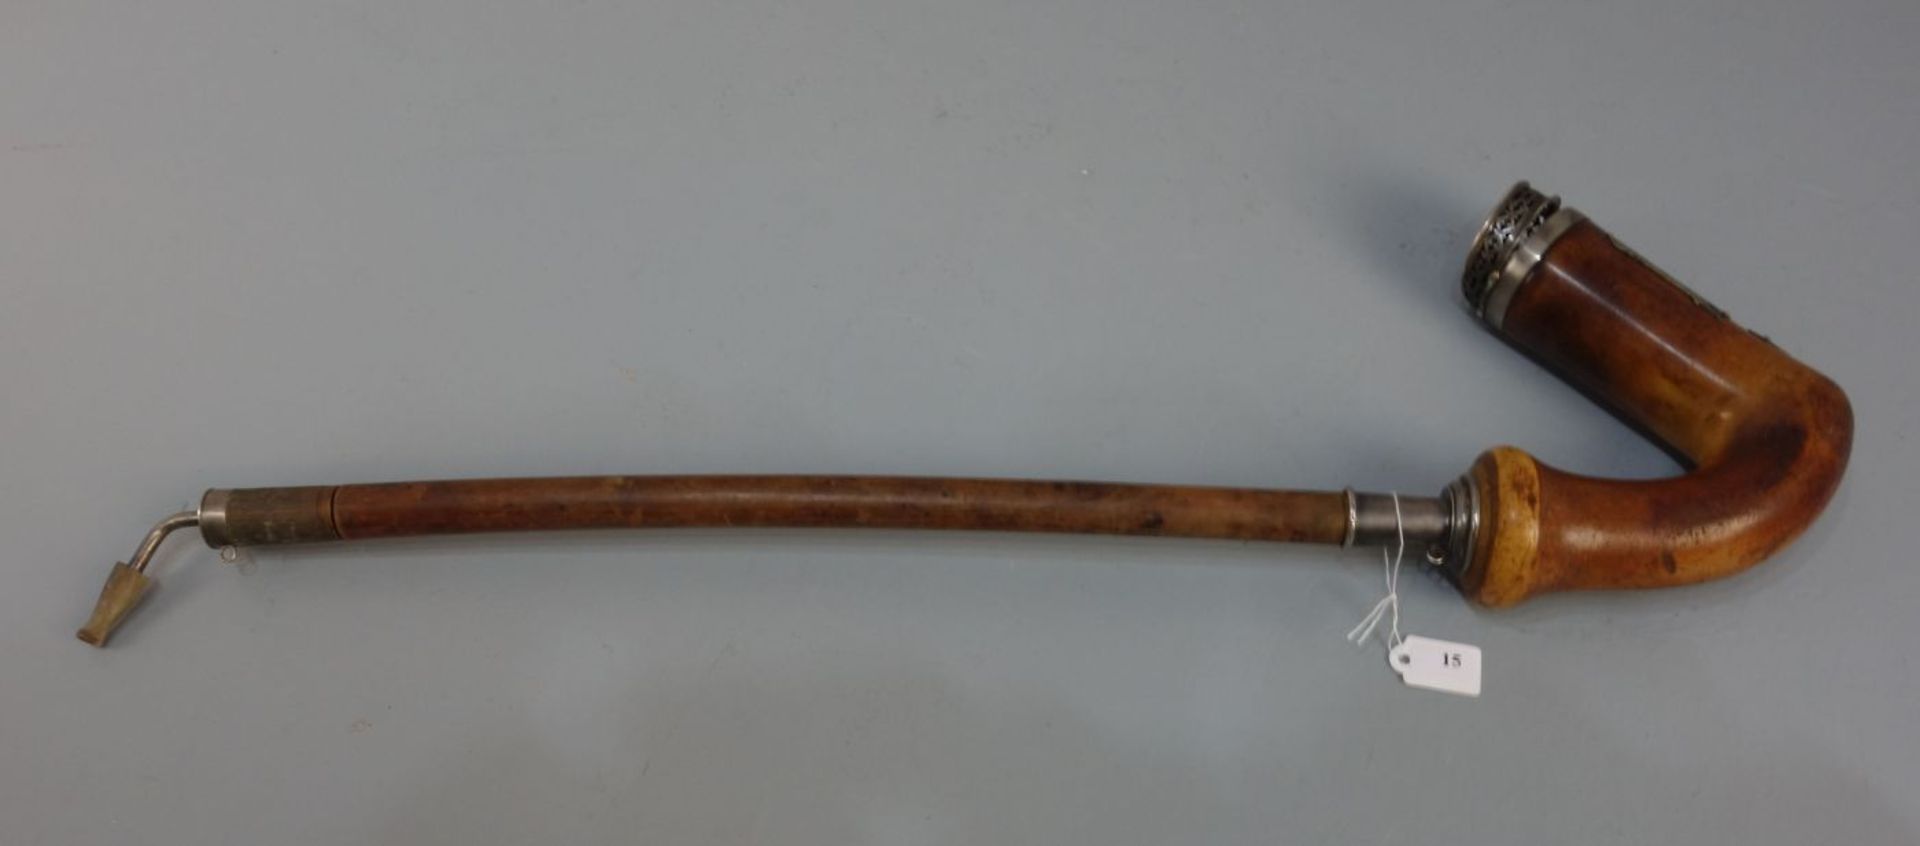 PFEIFE MIT FREIMAURERSYMBOLIK / masonic pipe, 19. Jh.. Wurzelholz, geschnitzt und mit versilberten